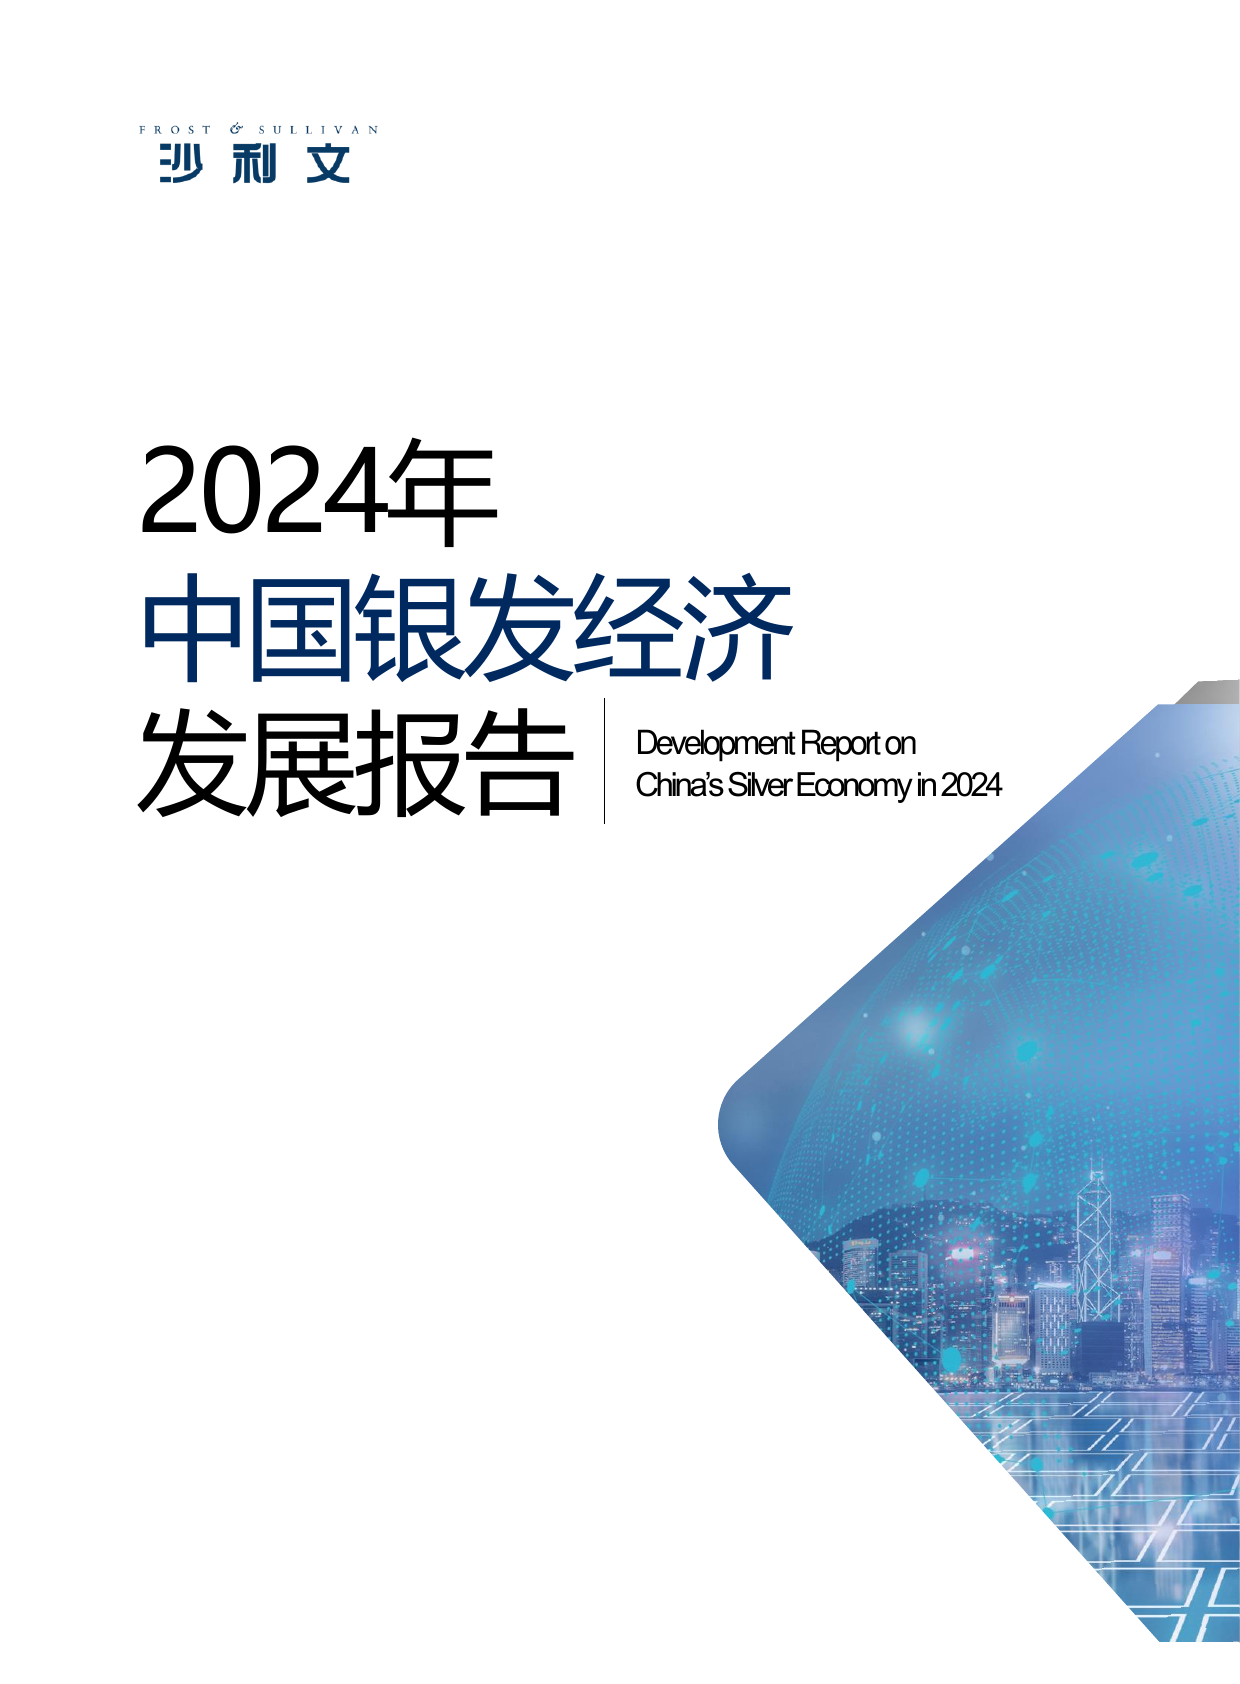 2024年中国银发经济发展报告-沙利文-202406.pdf